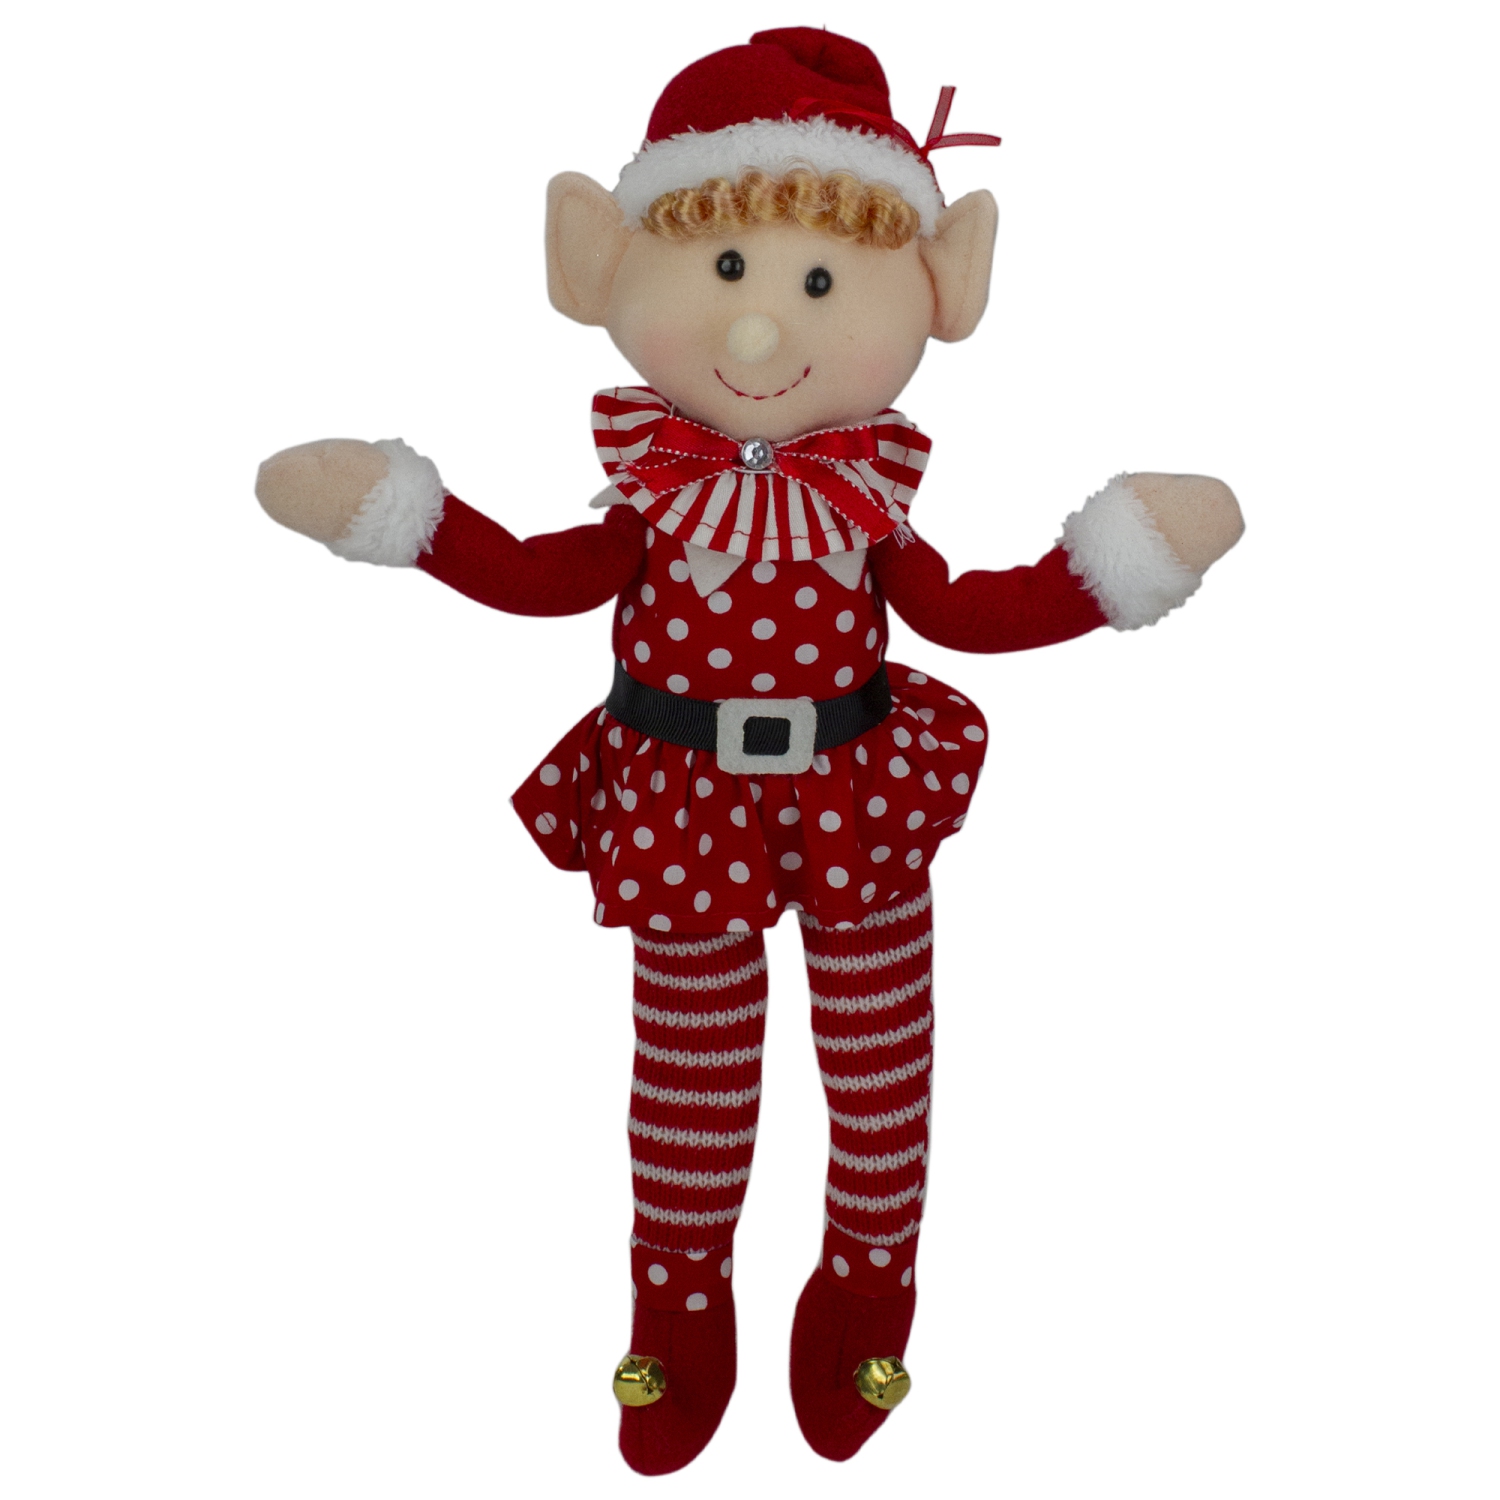 15" Girl Elf in Polka Dot Dress Christmas Ornament